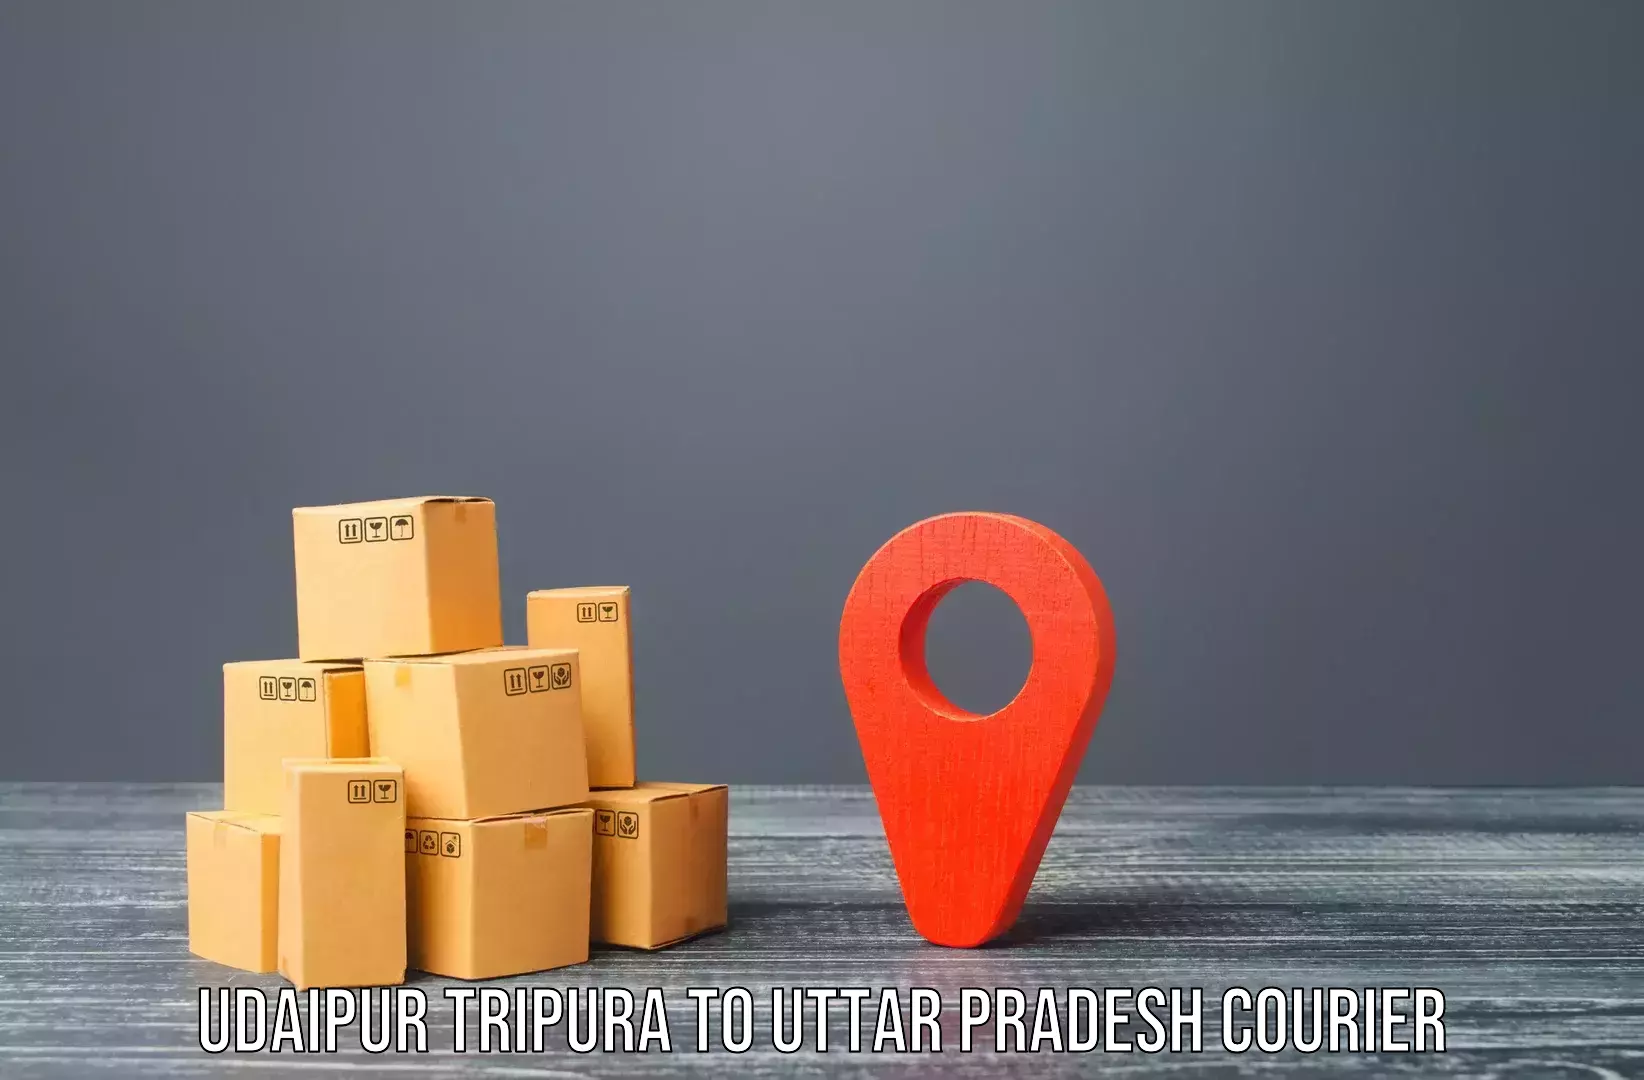 Furniture transport services Udaipur Tripura to IIT Varanasi